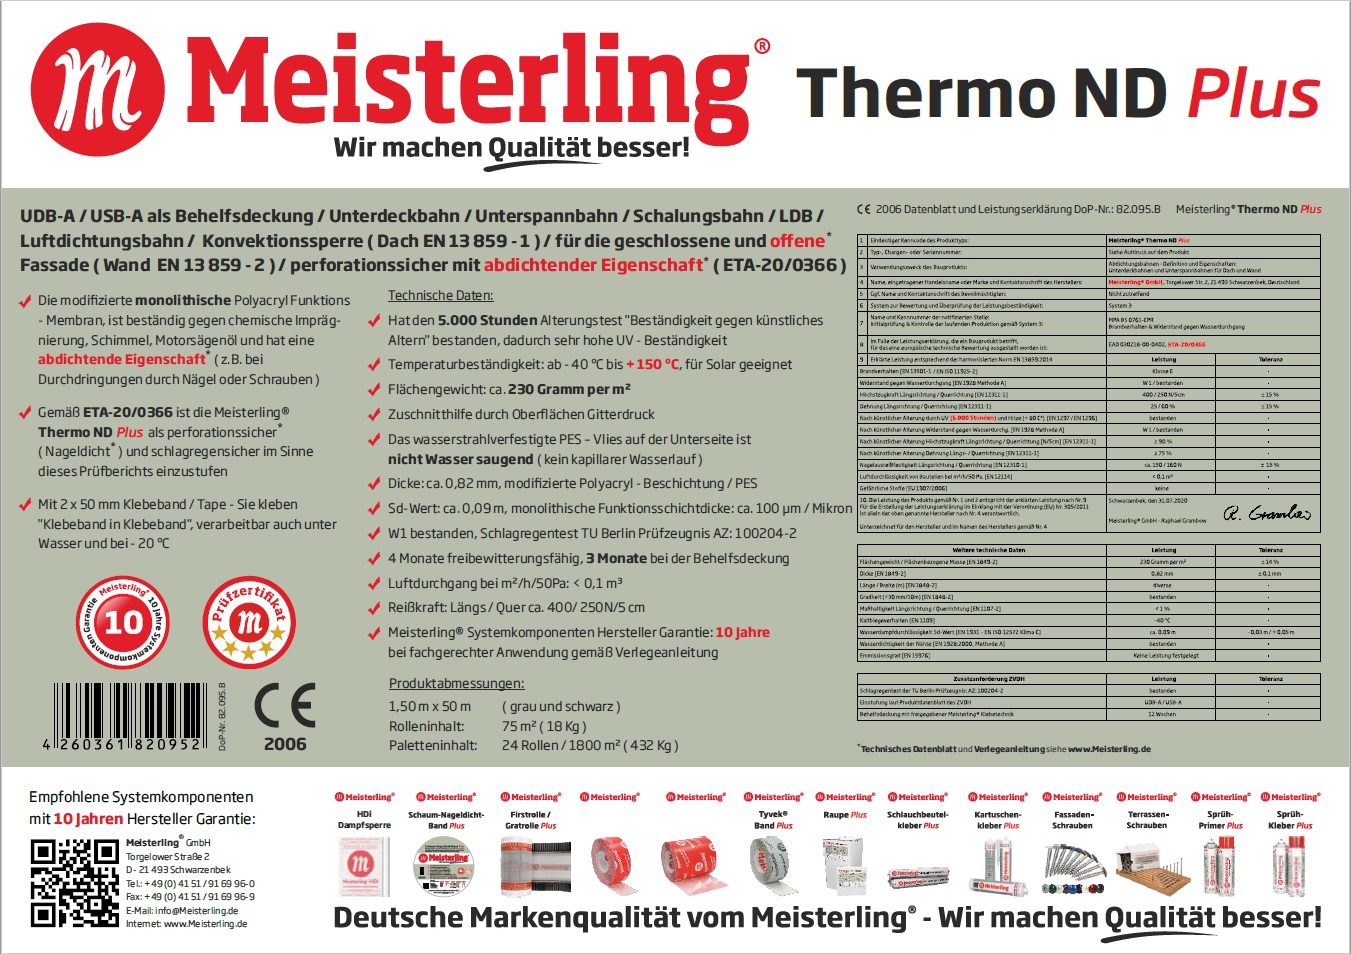 Meisterling Thermo ND PLUS Technische Daten